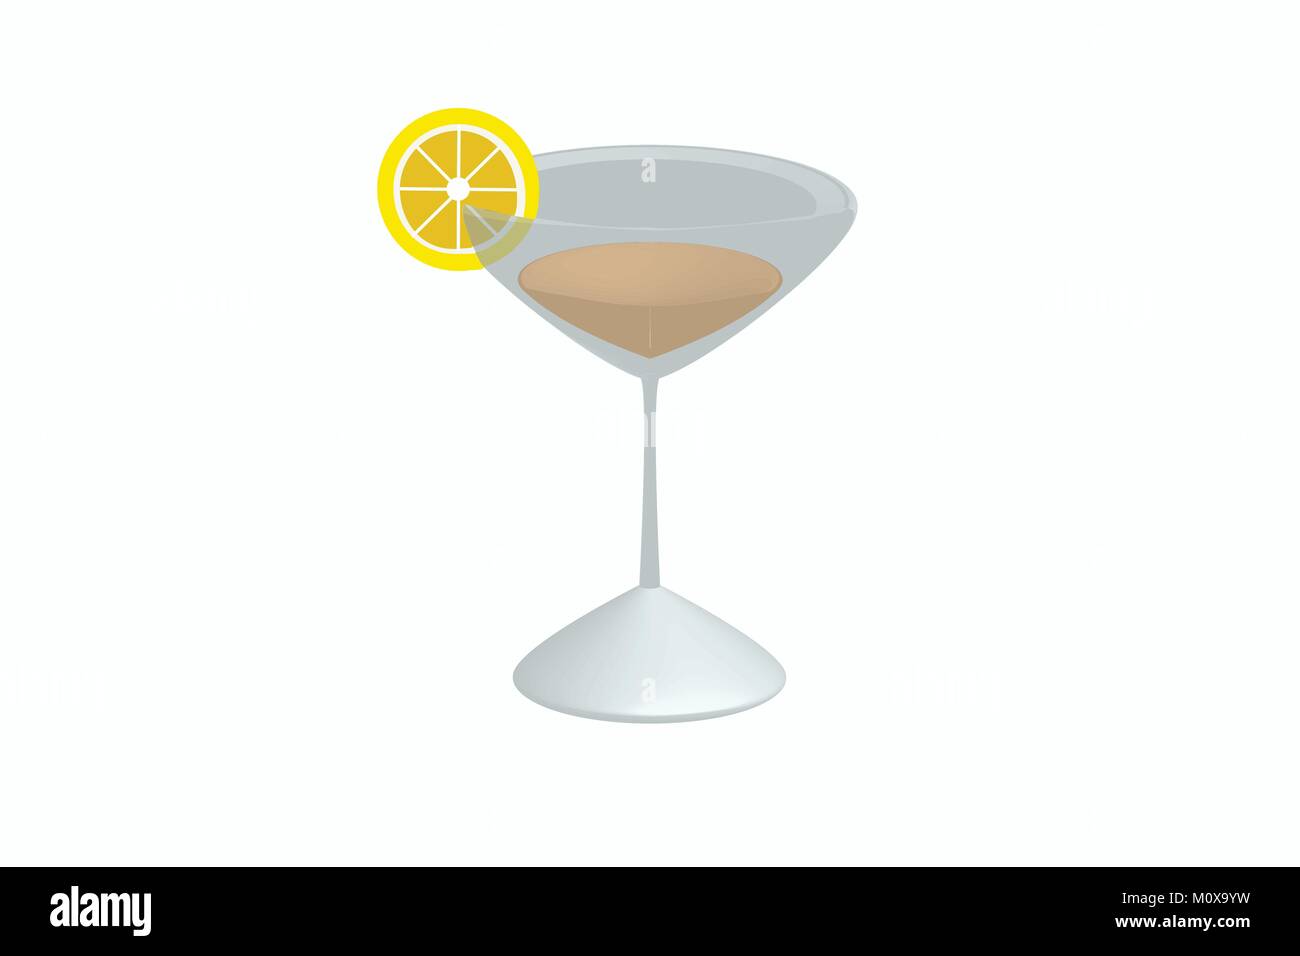 Ilustración de cóctel con la rodaja de limón sobre el vidrio en 3D, vector de la bebida alcohólica en una copa de martini y una rodaja de limón sobre/ bebida Ilustración del Vector